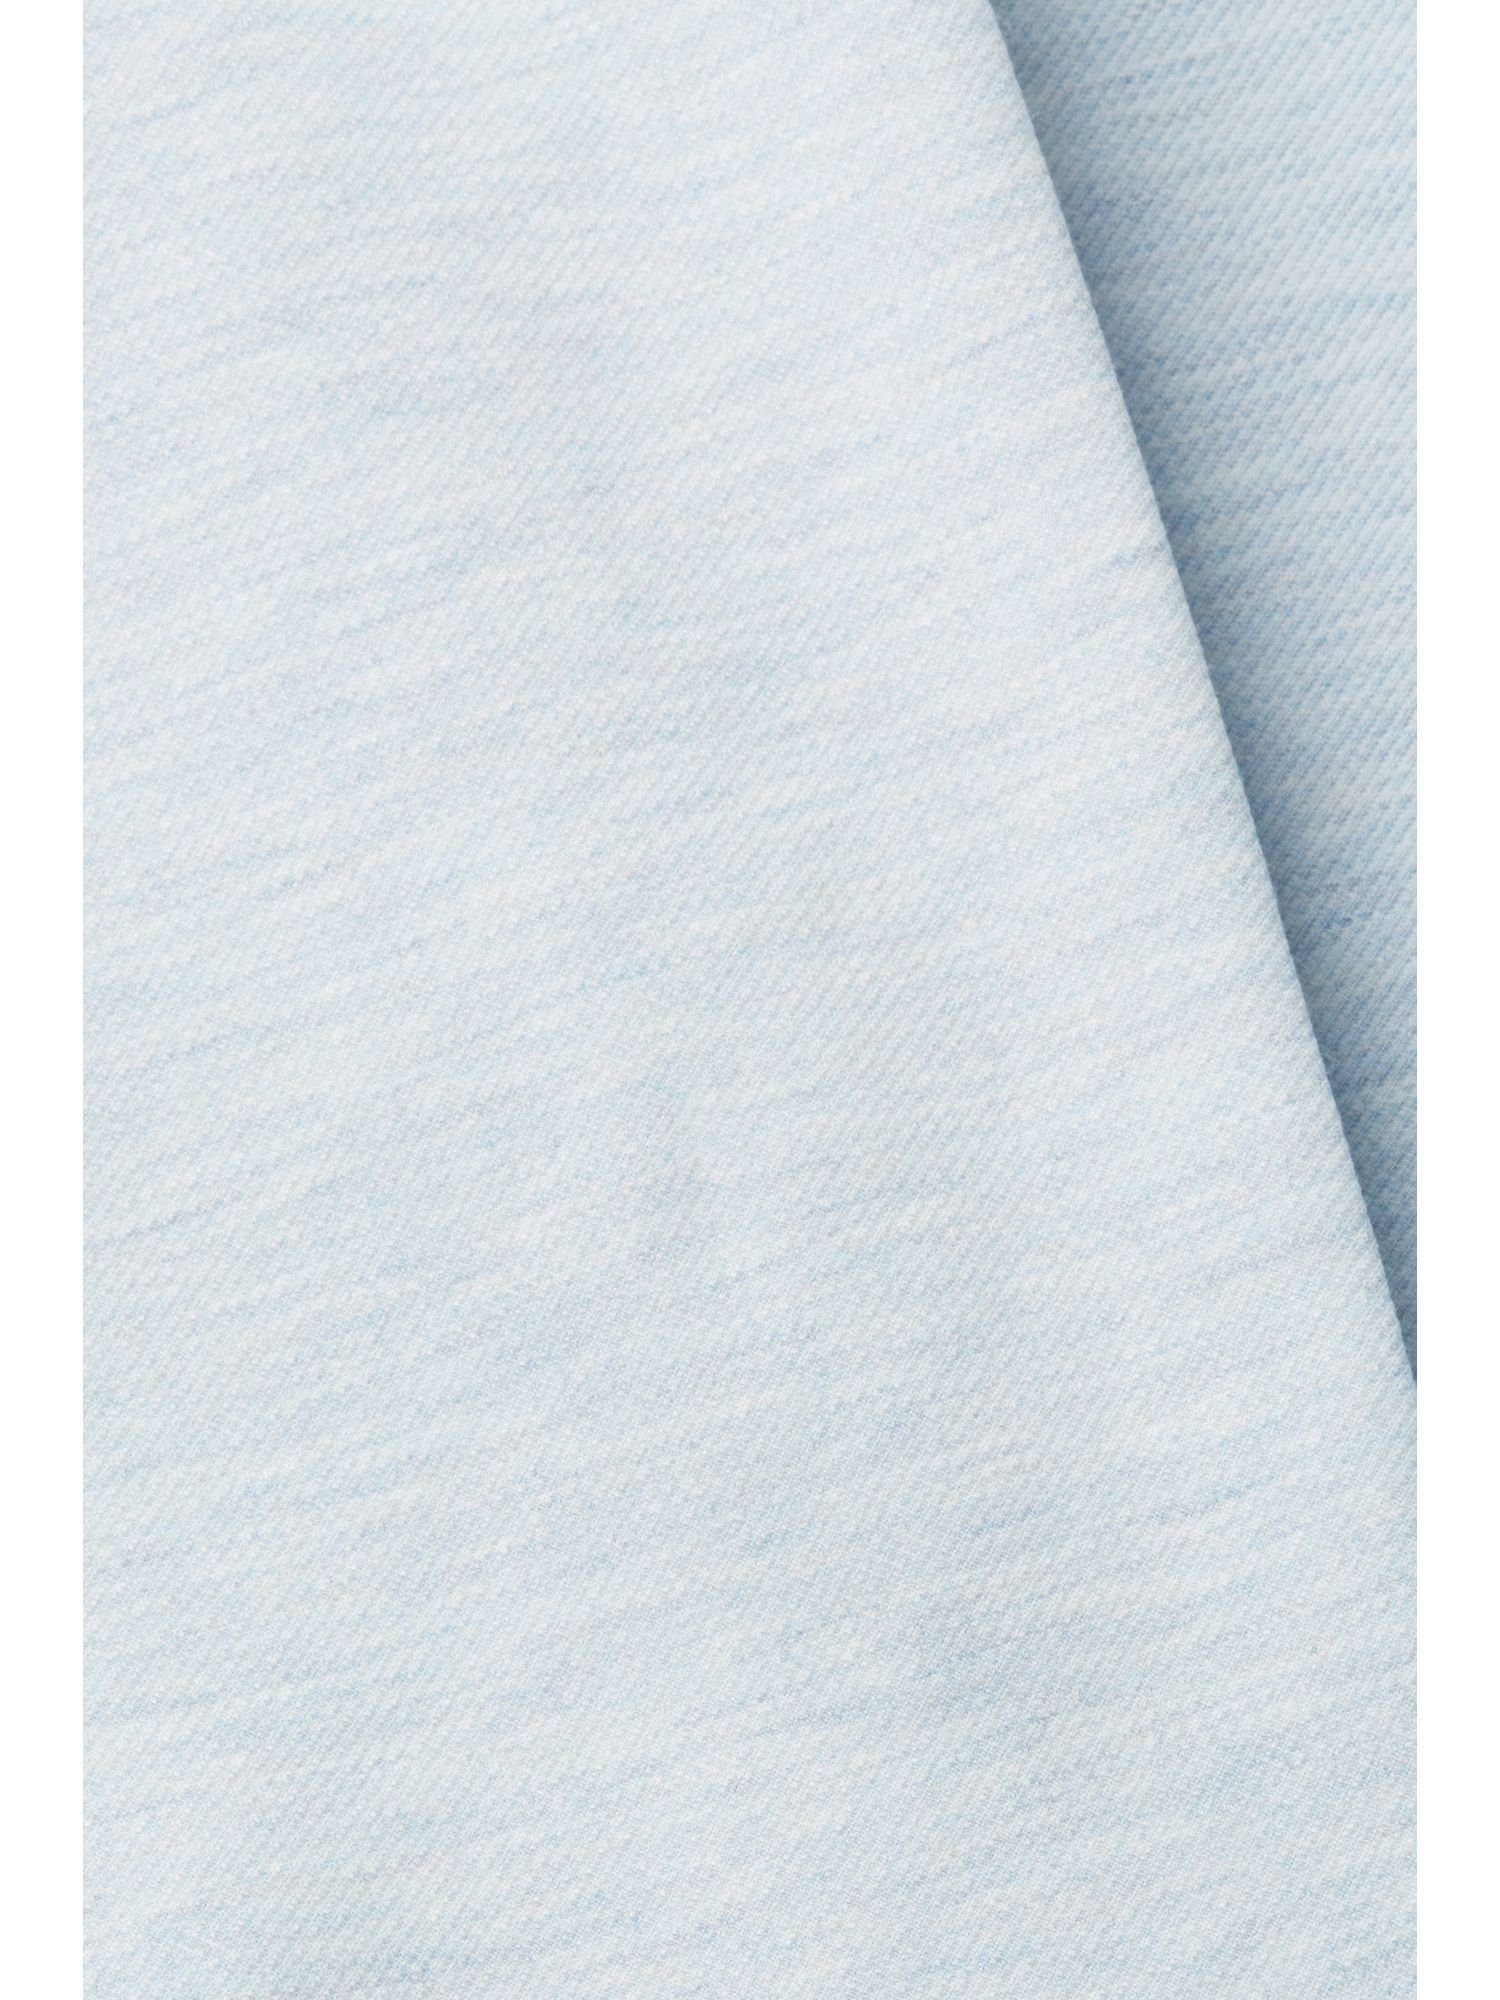 Esprit Langmantel Mantel BLUE PASTEL Doubleface-Jersey aus